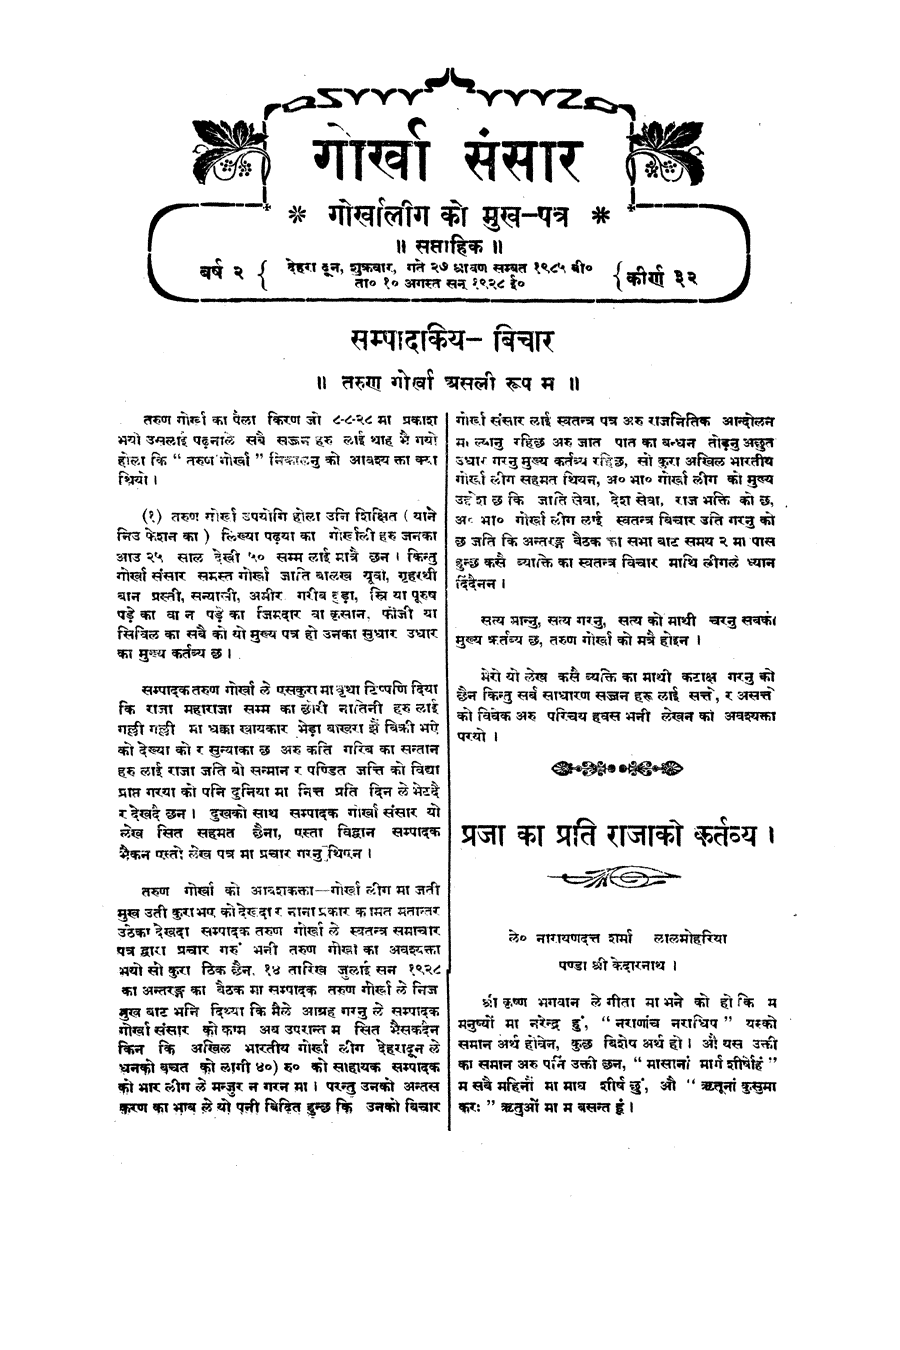 Gorkha Sansar, 10 Aug 1928, page 3